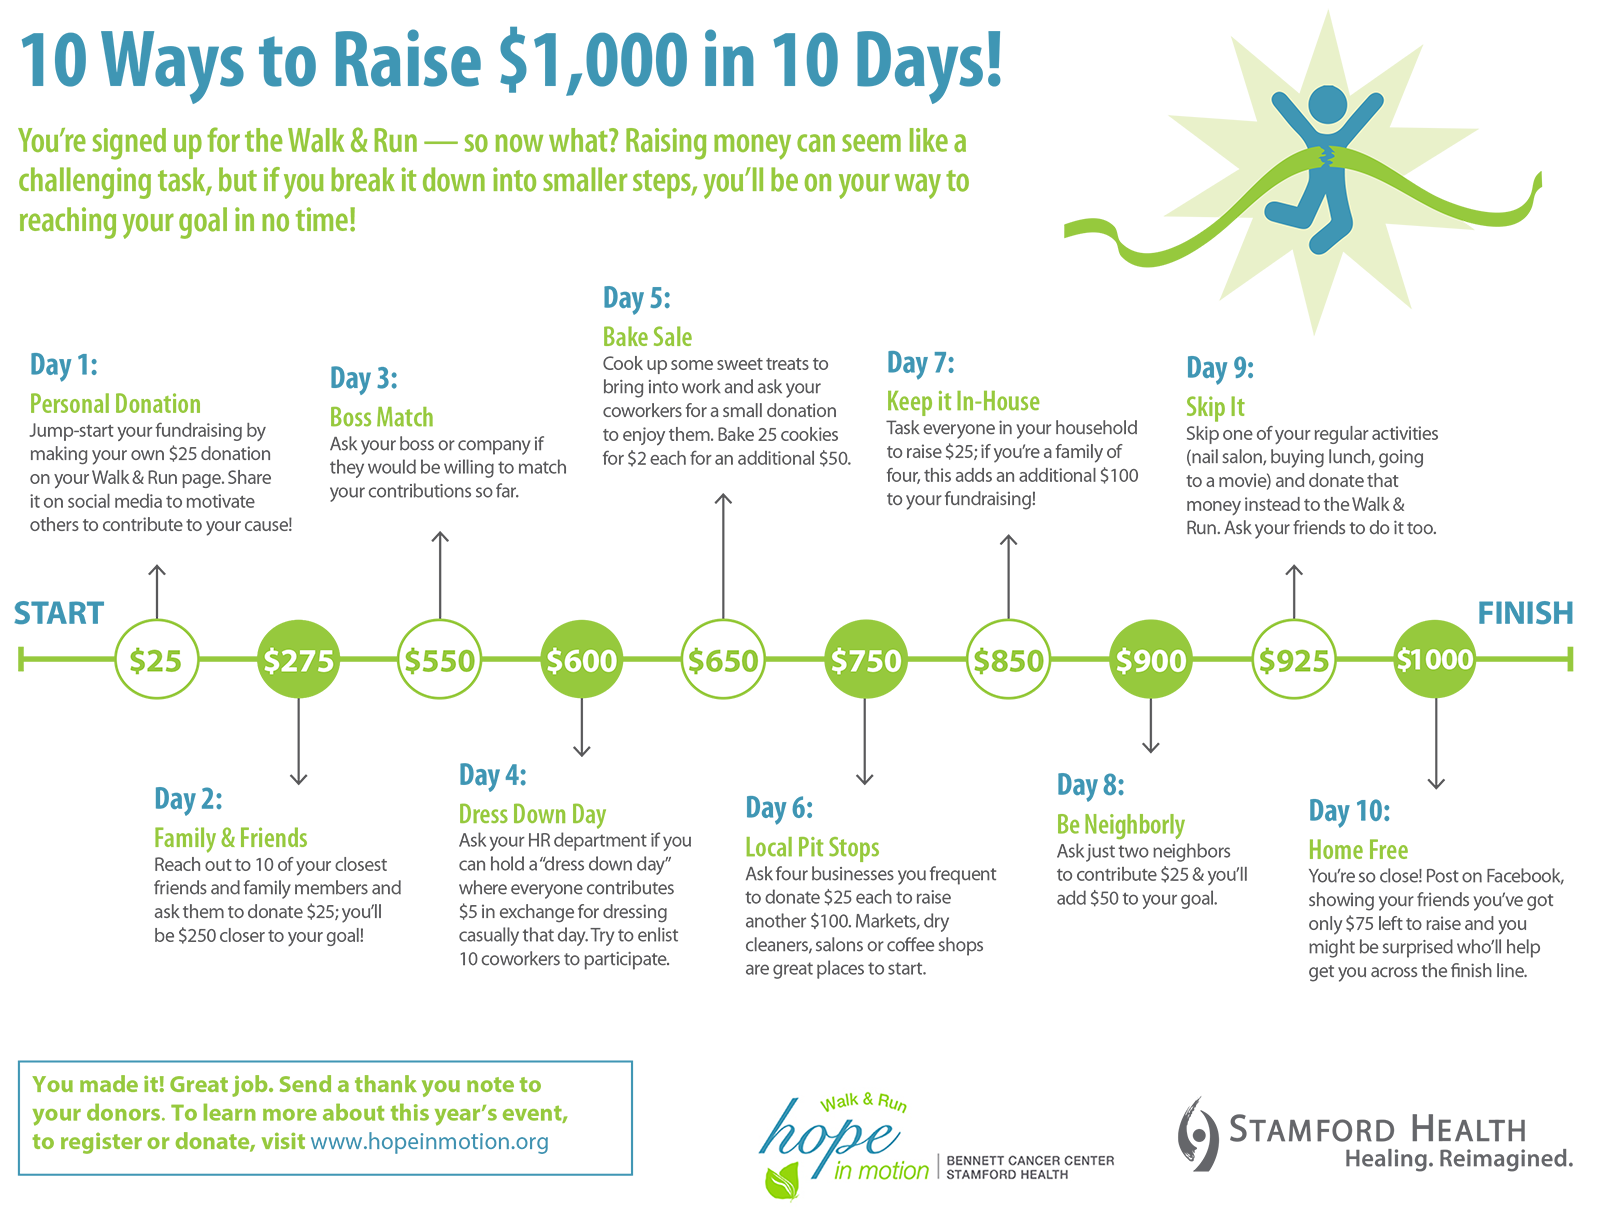 10 ways to raise $1000